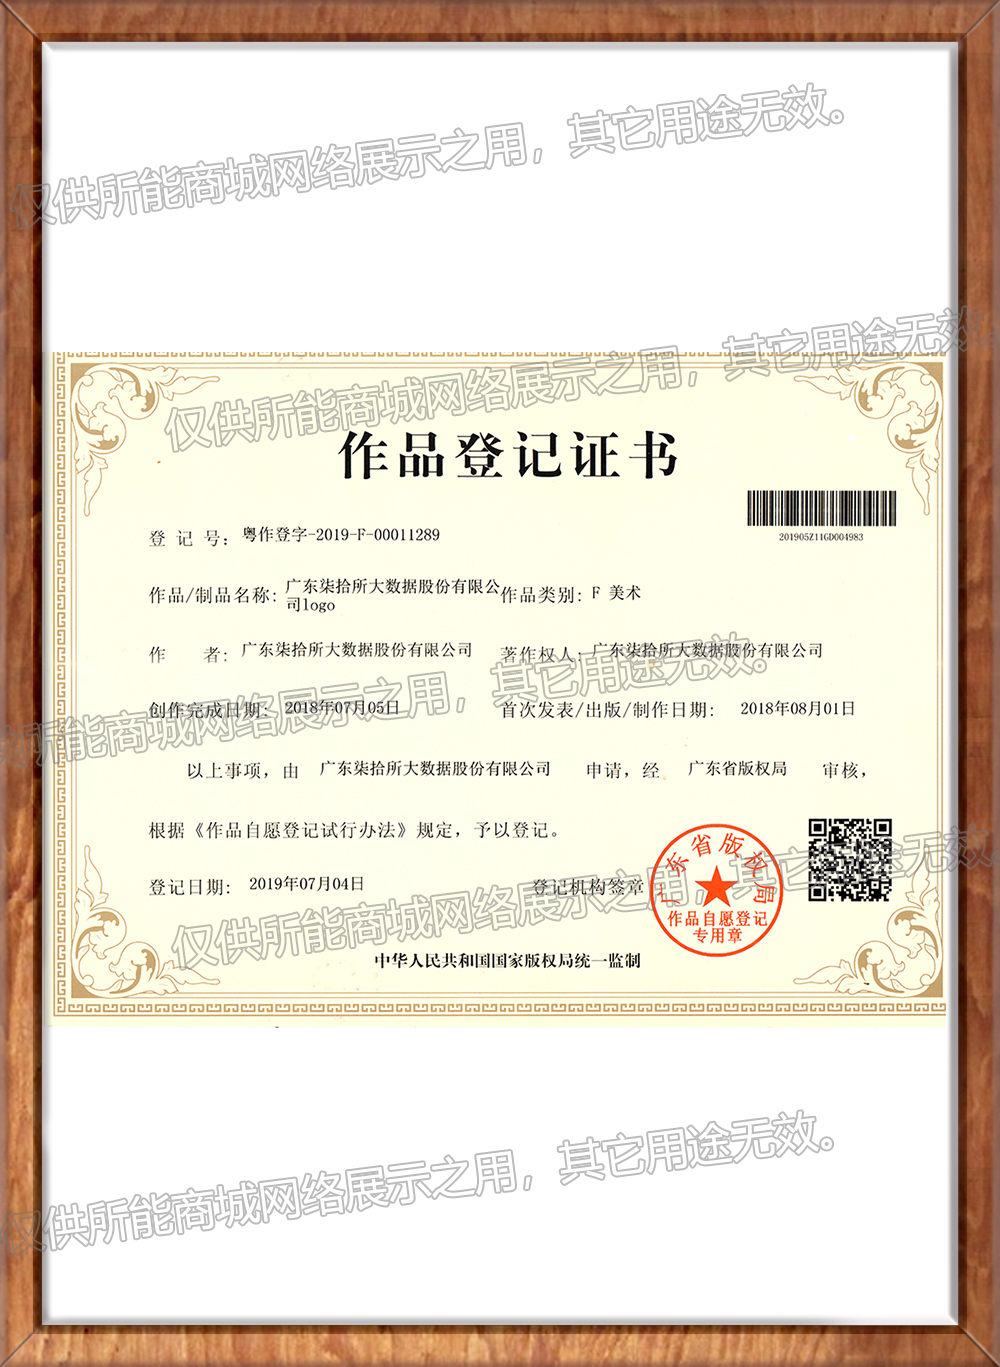 《广东柒拾所大数据股份有限公司LOGO》作品登记证书